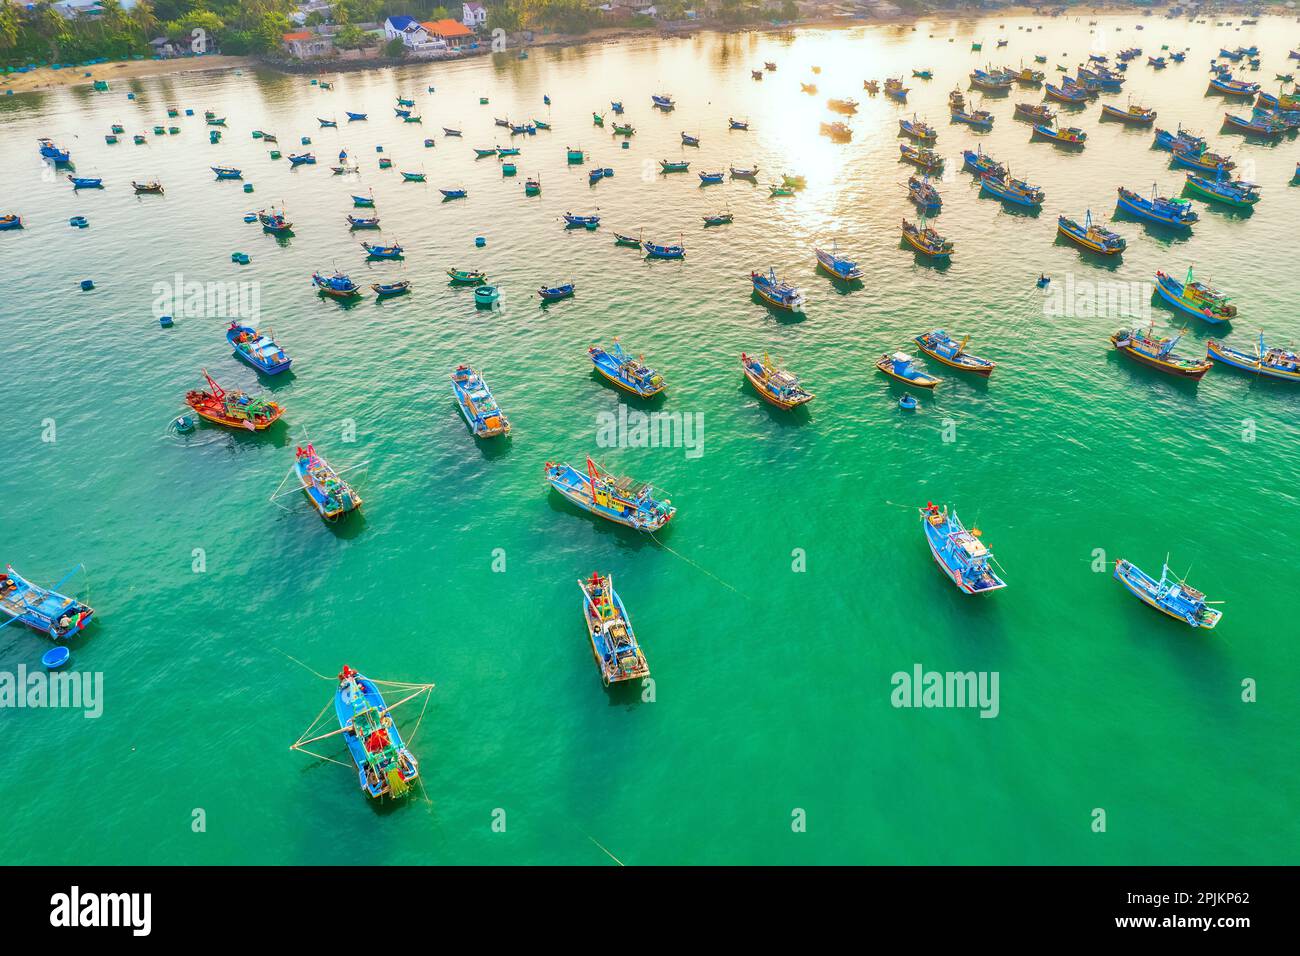 Vista aérea del pueblo pesquero de Mui Ne por la mañana con cientos de barcos anclados para evitar tormentas, esta es una hermosa bahía en el centro de Vietnam Foto de stock